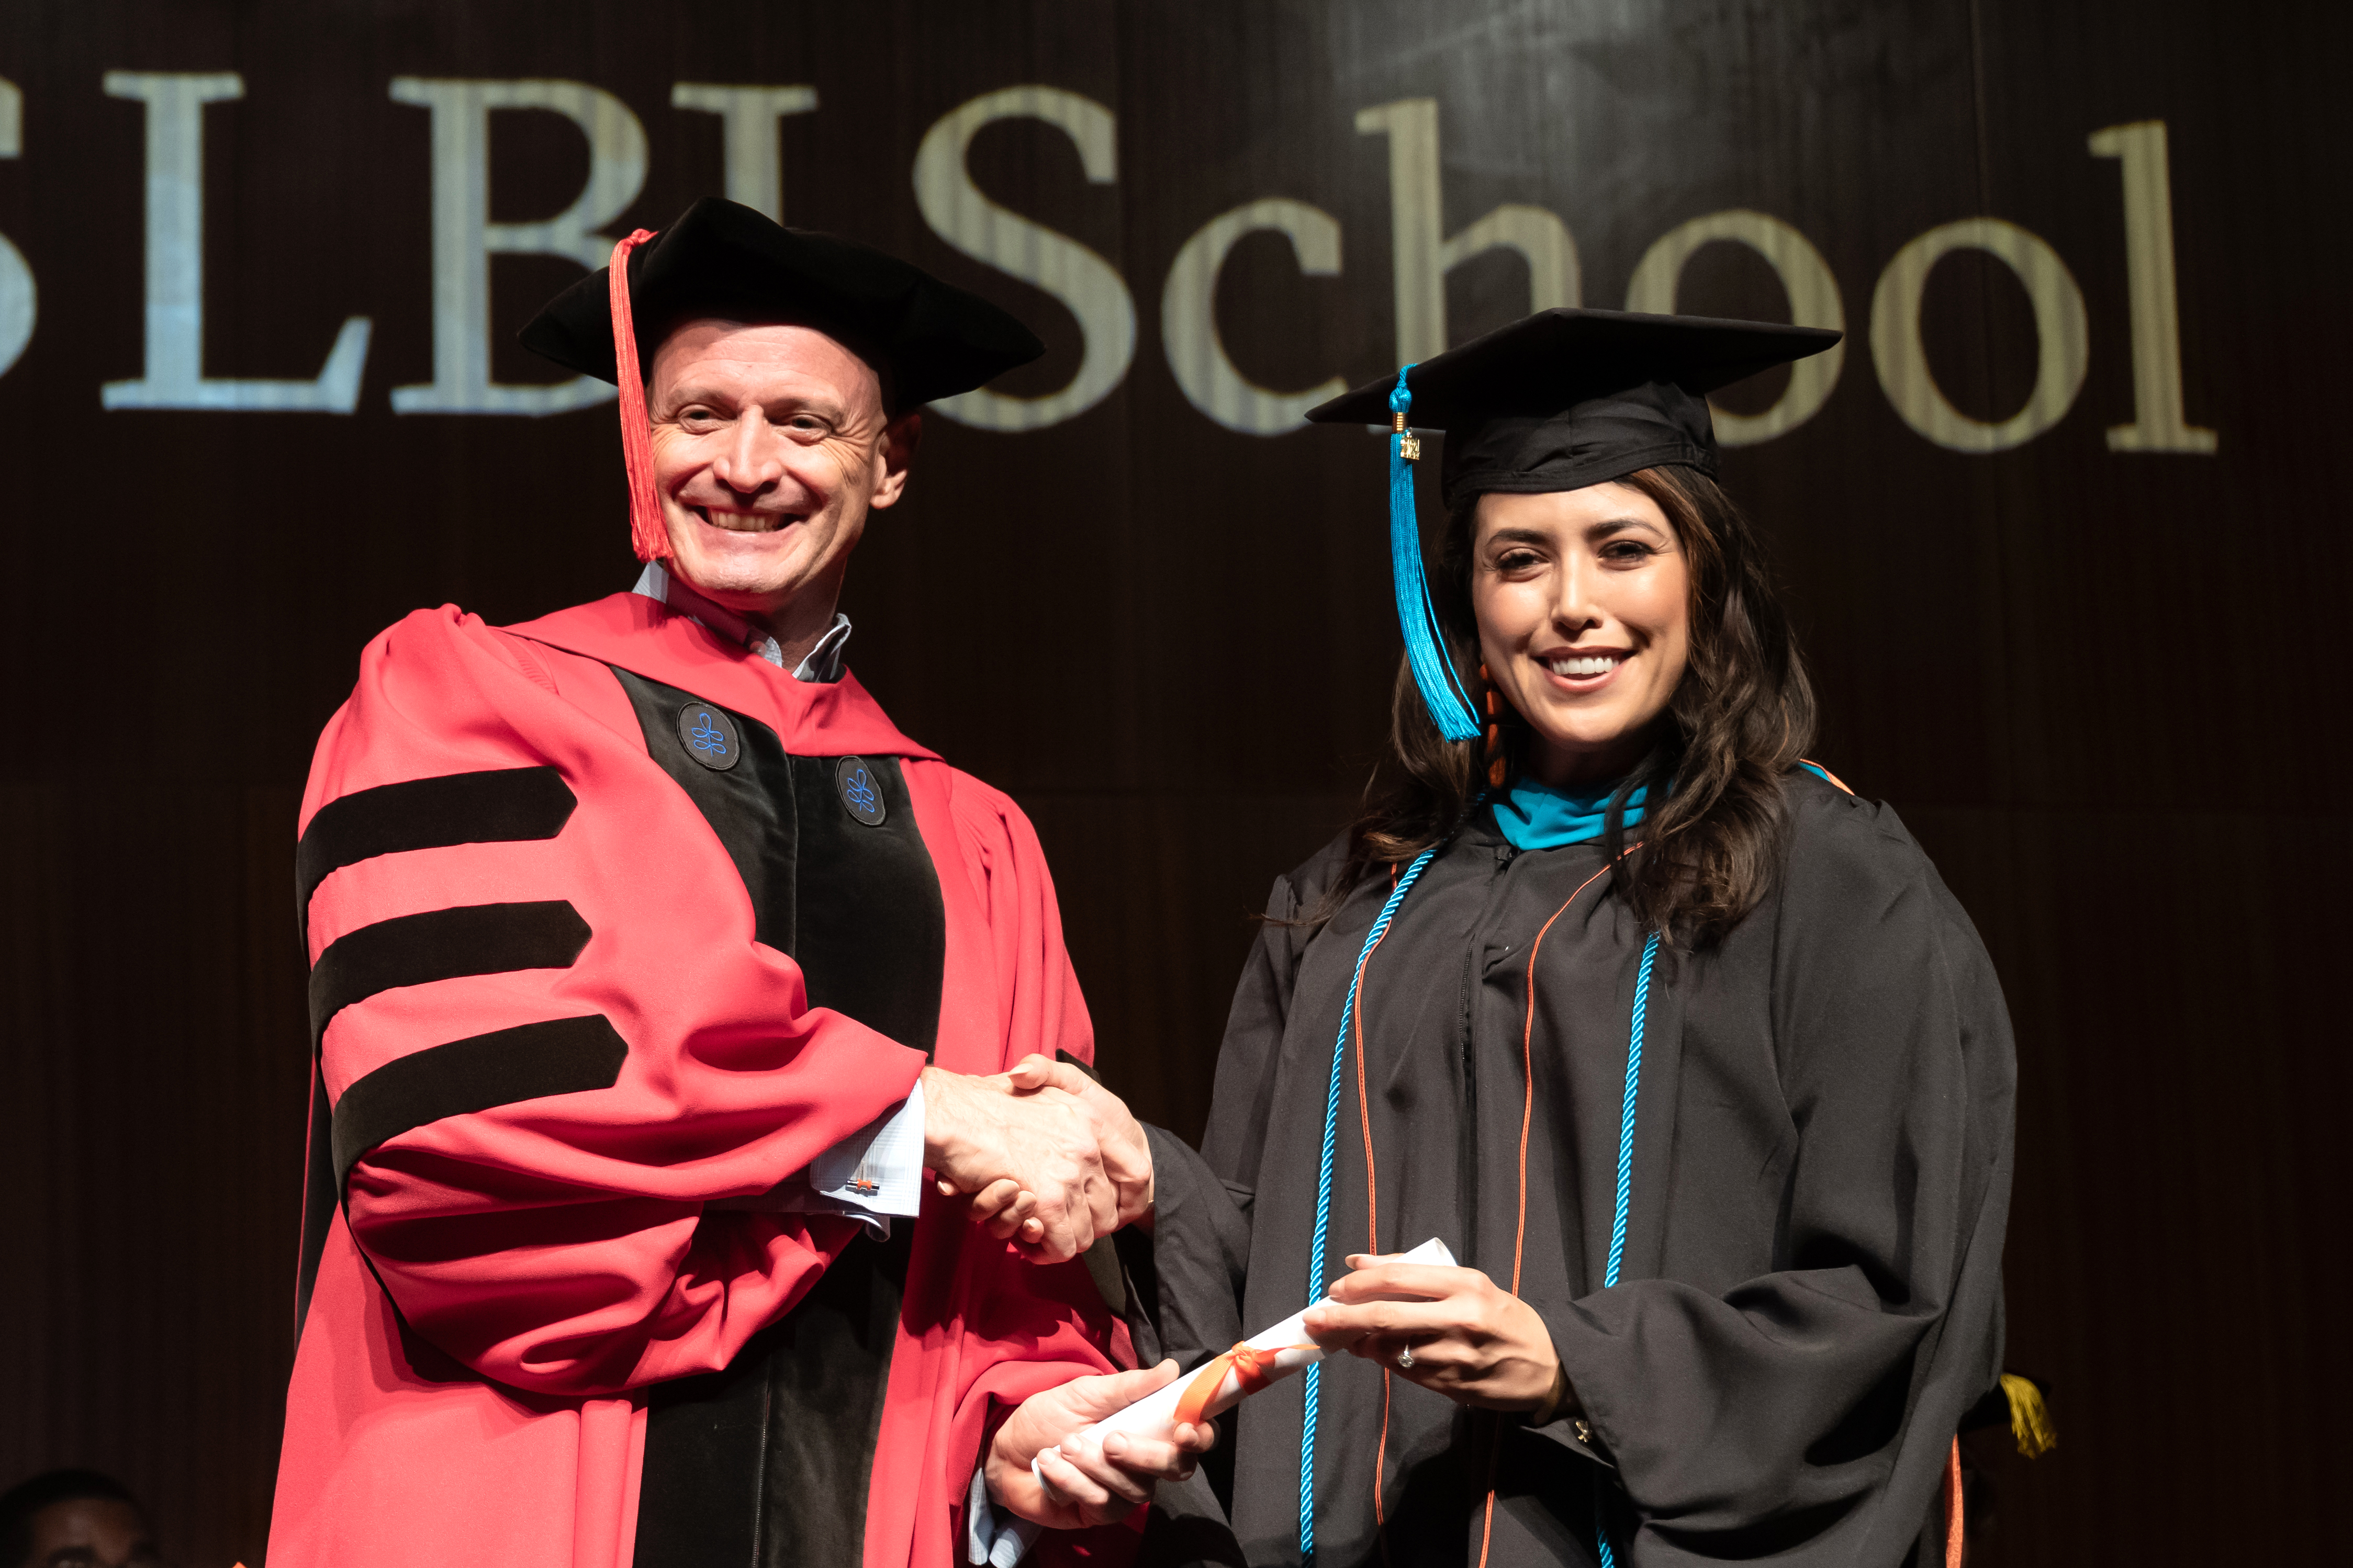 Dean JR DeShazo gives a diploma to EMPL graduate Vanessa Fuentes.